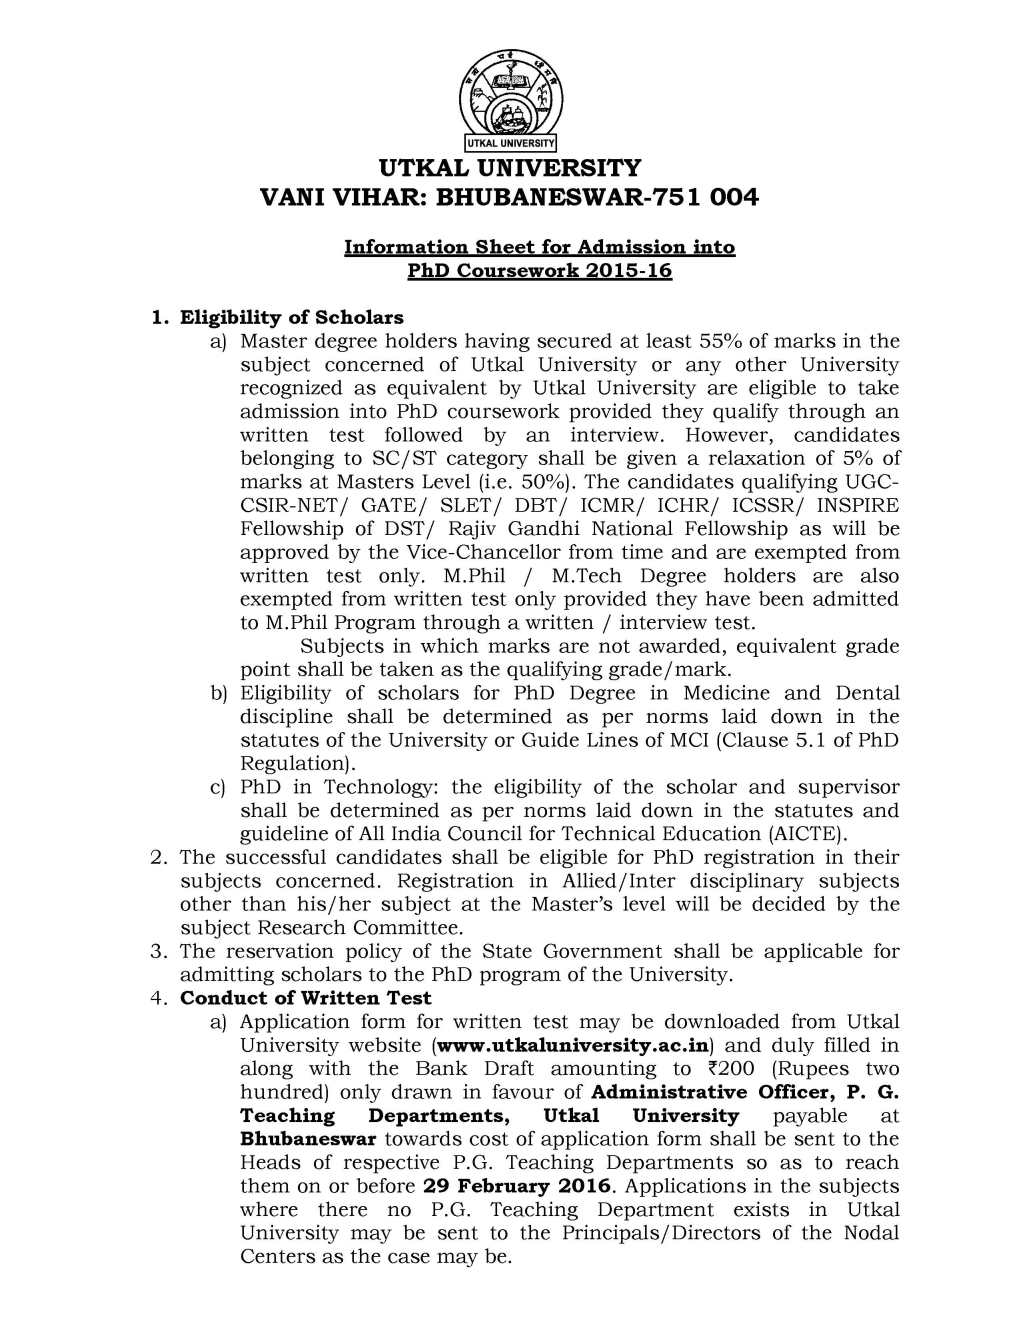 phd registration form utkal university